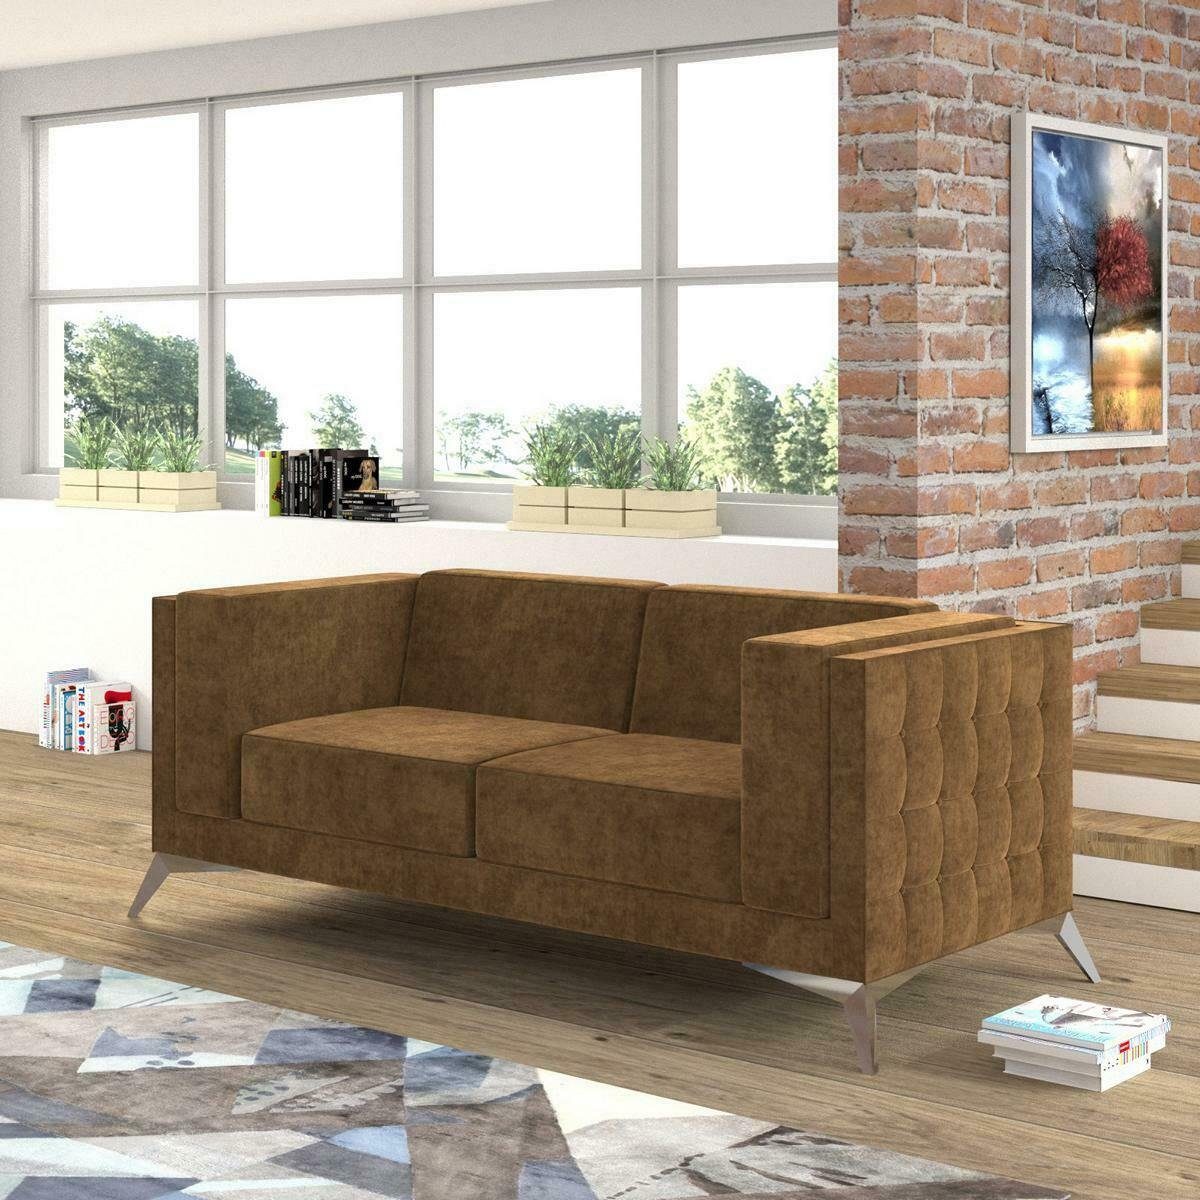 JVmoebel Sofa Chesterfield Polster Couch Stoff Couchen Sofa Sitz Garnitur Zweisitzer, Made in Europe